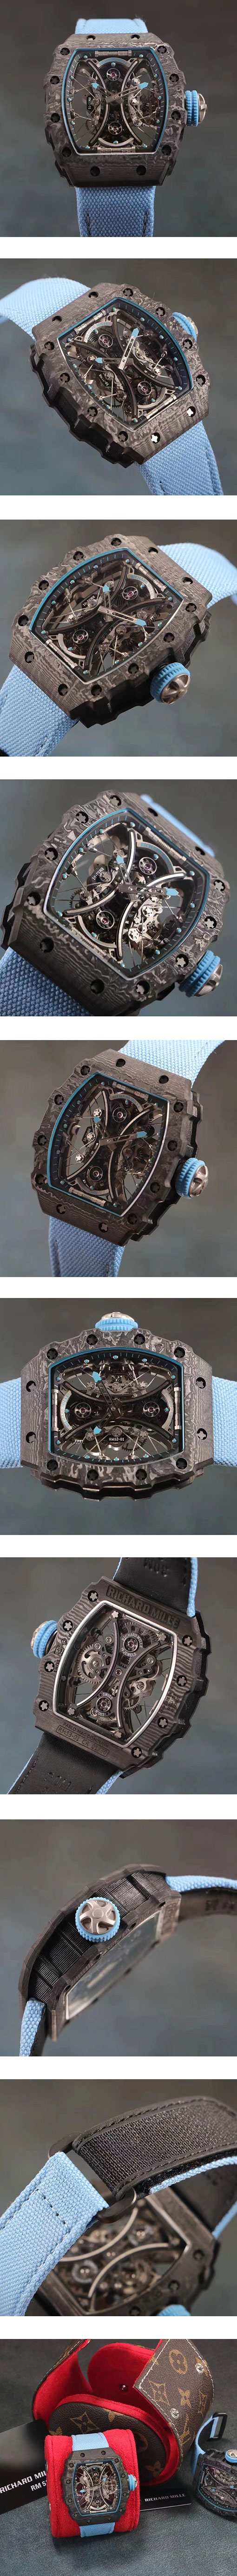 最新バージョン！ リシャール・ミルスーパーコピー時計 RM 53-01 トゥールビヨン パブロ・マクドナウ